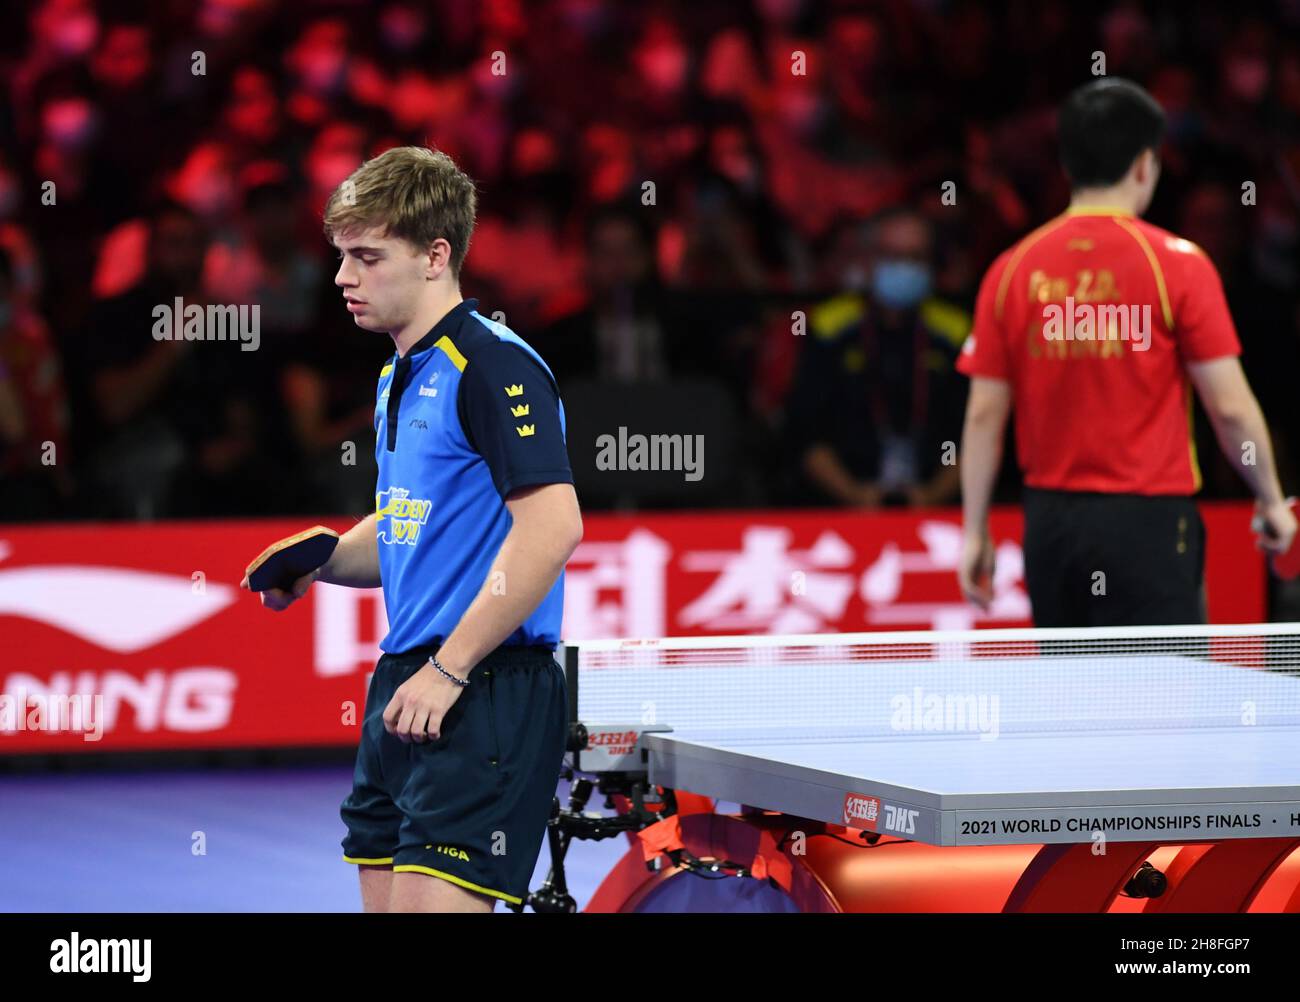 Houston.29 novembre 2021.Truls Moregard (L) de Suède réagit lors du match  final masculin entre Fan Zhendong de Chine et Truls Moregard de Suède lors  des finales des Championnats du monde de tennis